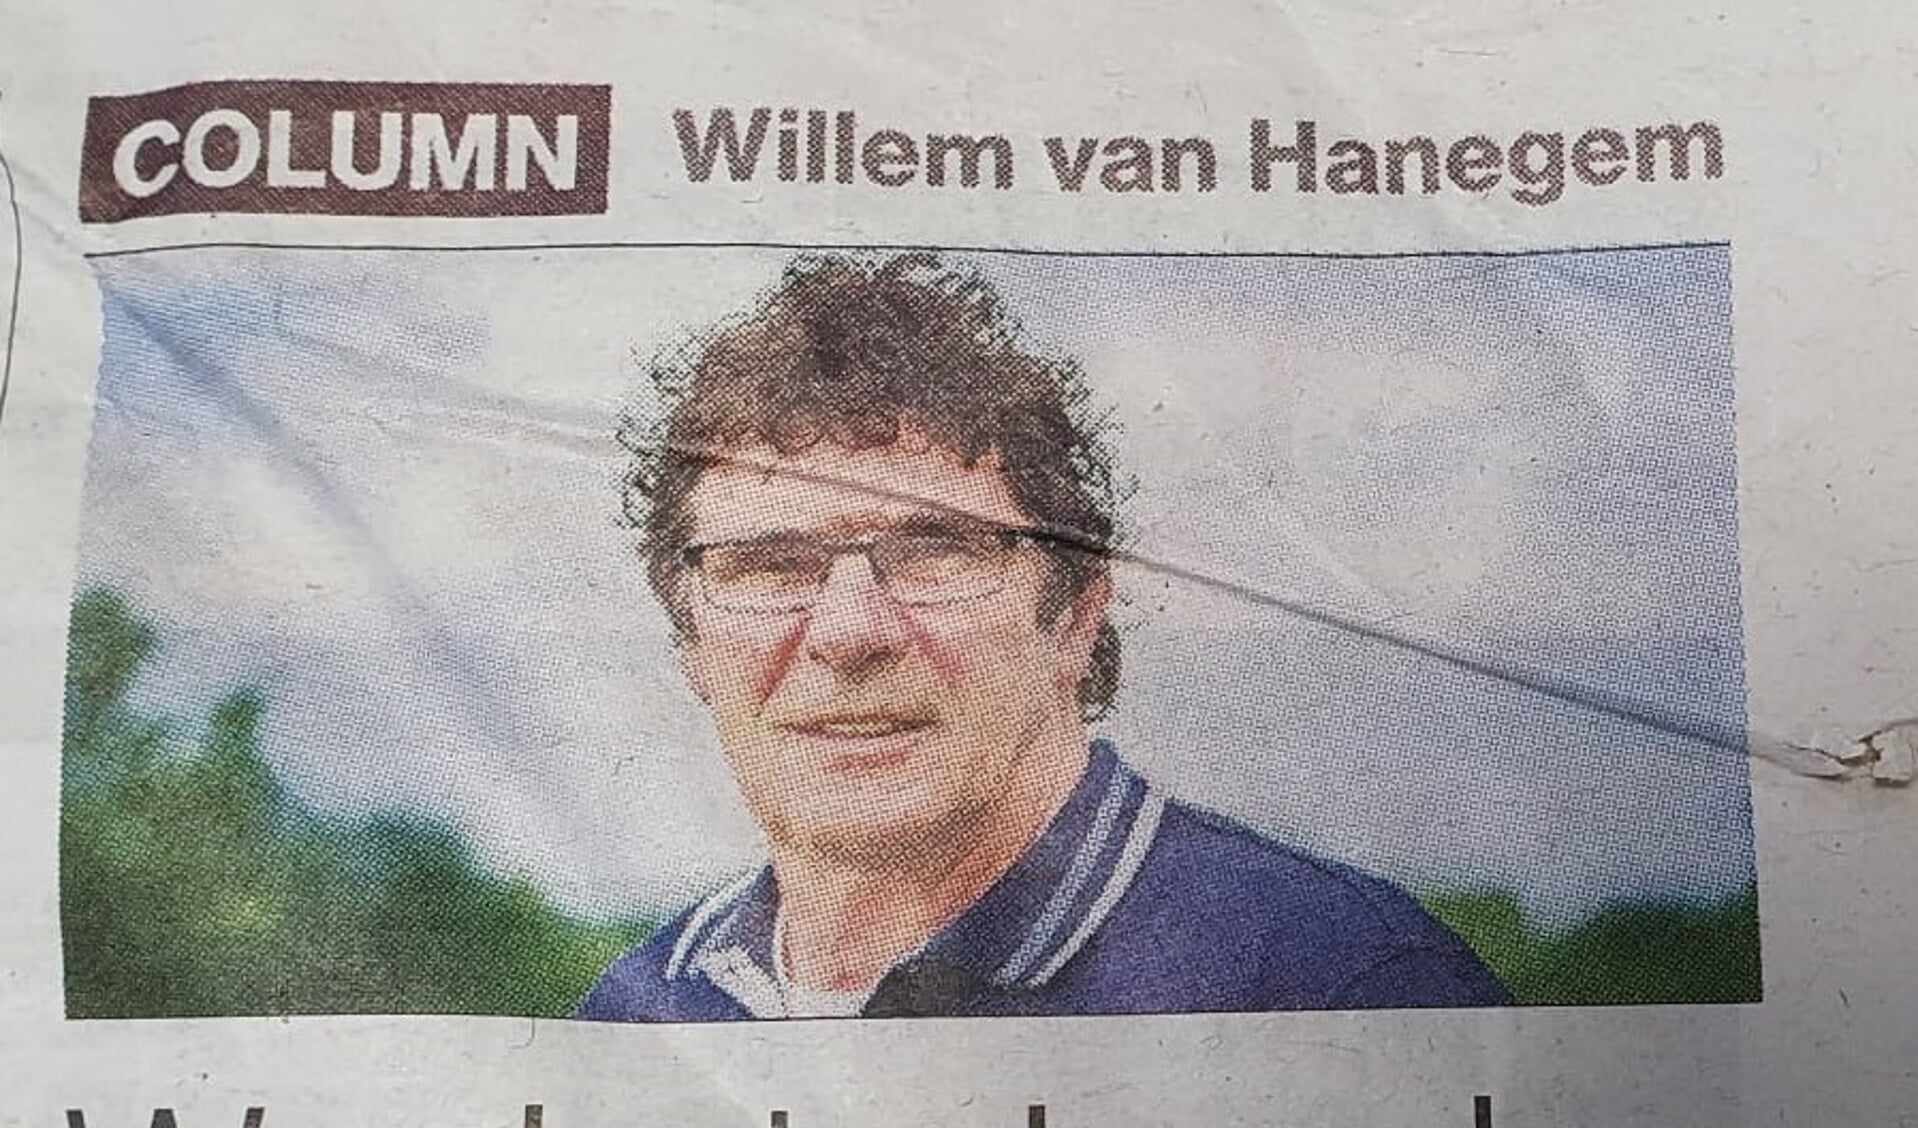 De column van Willem van Hanegem (Foto: Almere DEZE WEEK)